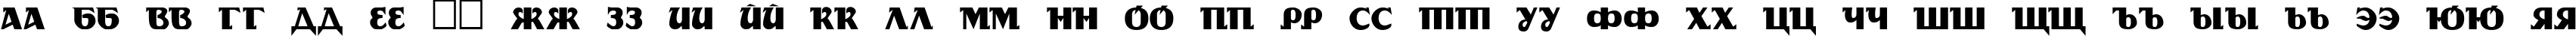 Пример написания русского алфавита шрифтом DS Rada